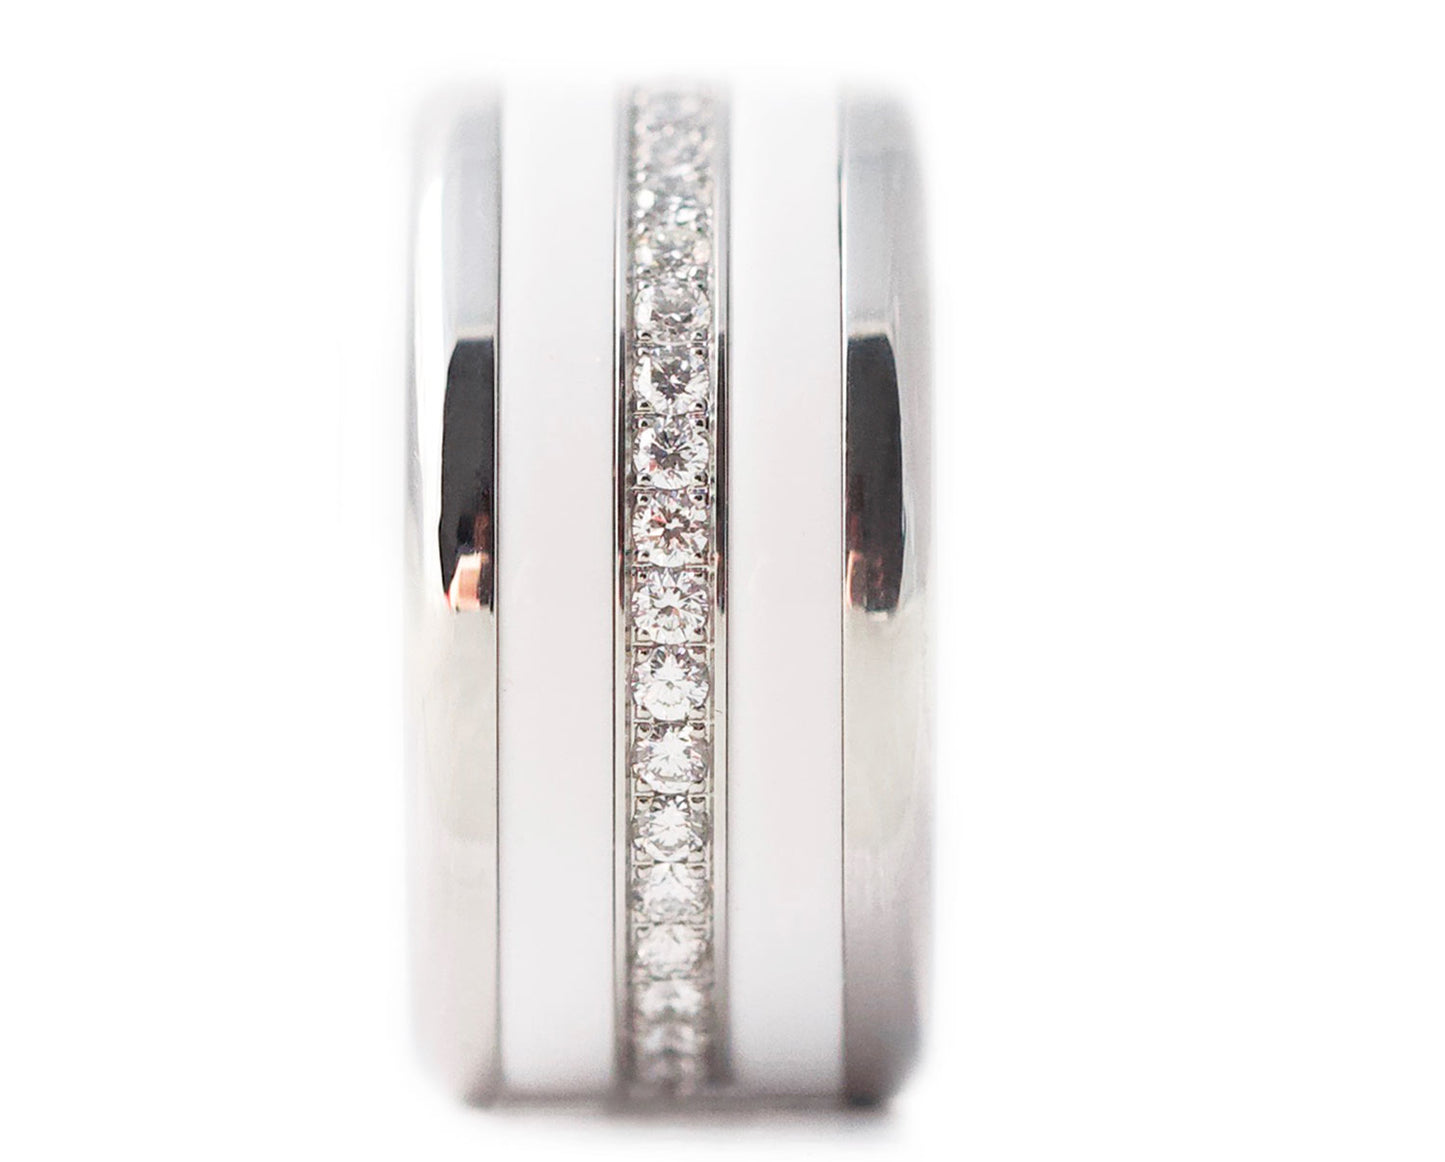 Coffret mood joaillerie comprenant une base small arrondie polie, 2 medium en polymer blanc et un medium entièrement serti de diamants 1.6mm